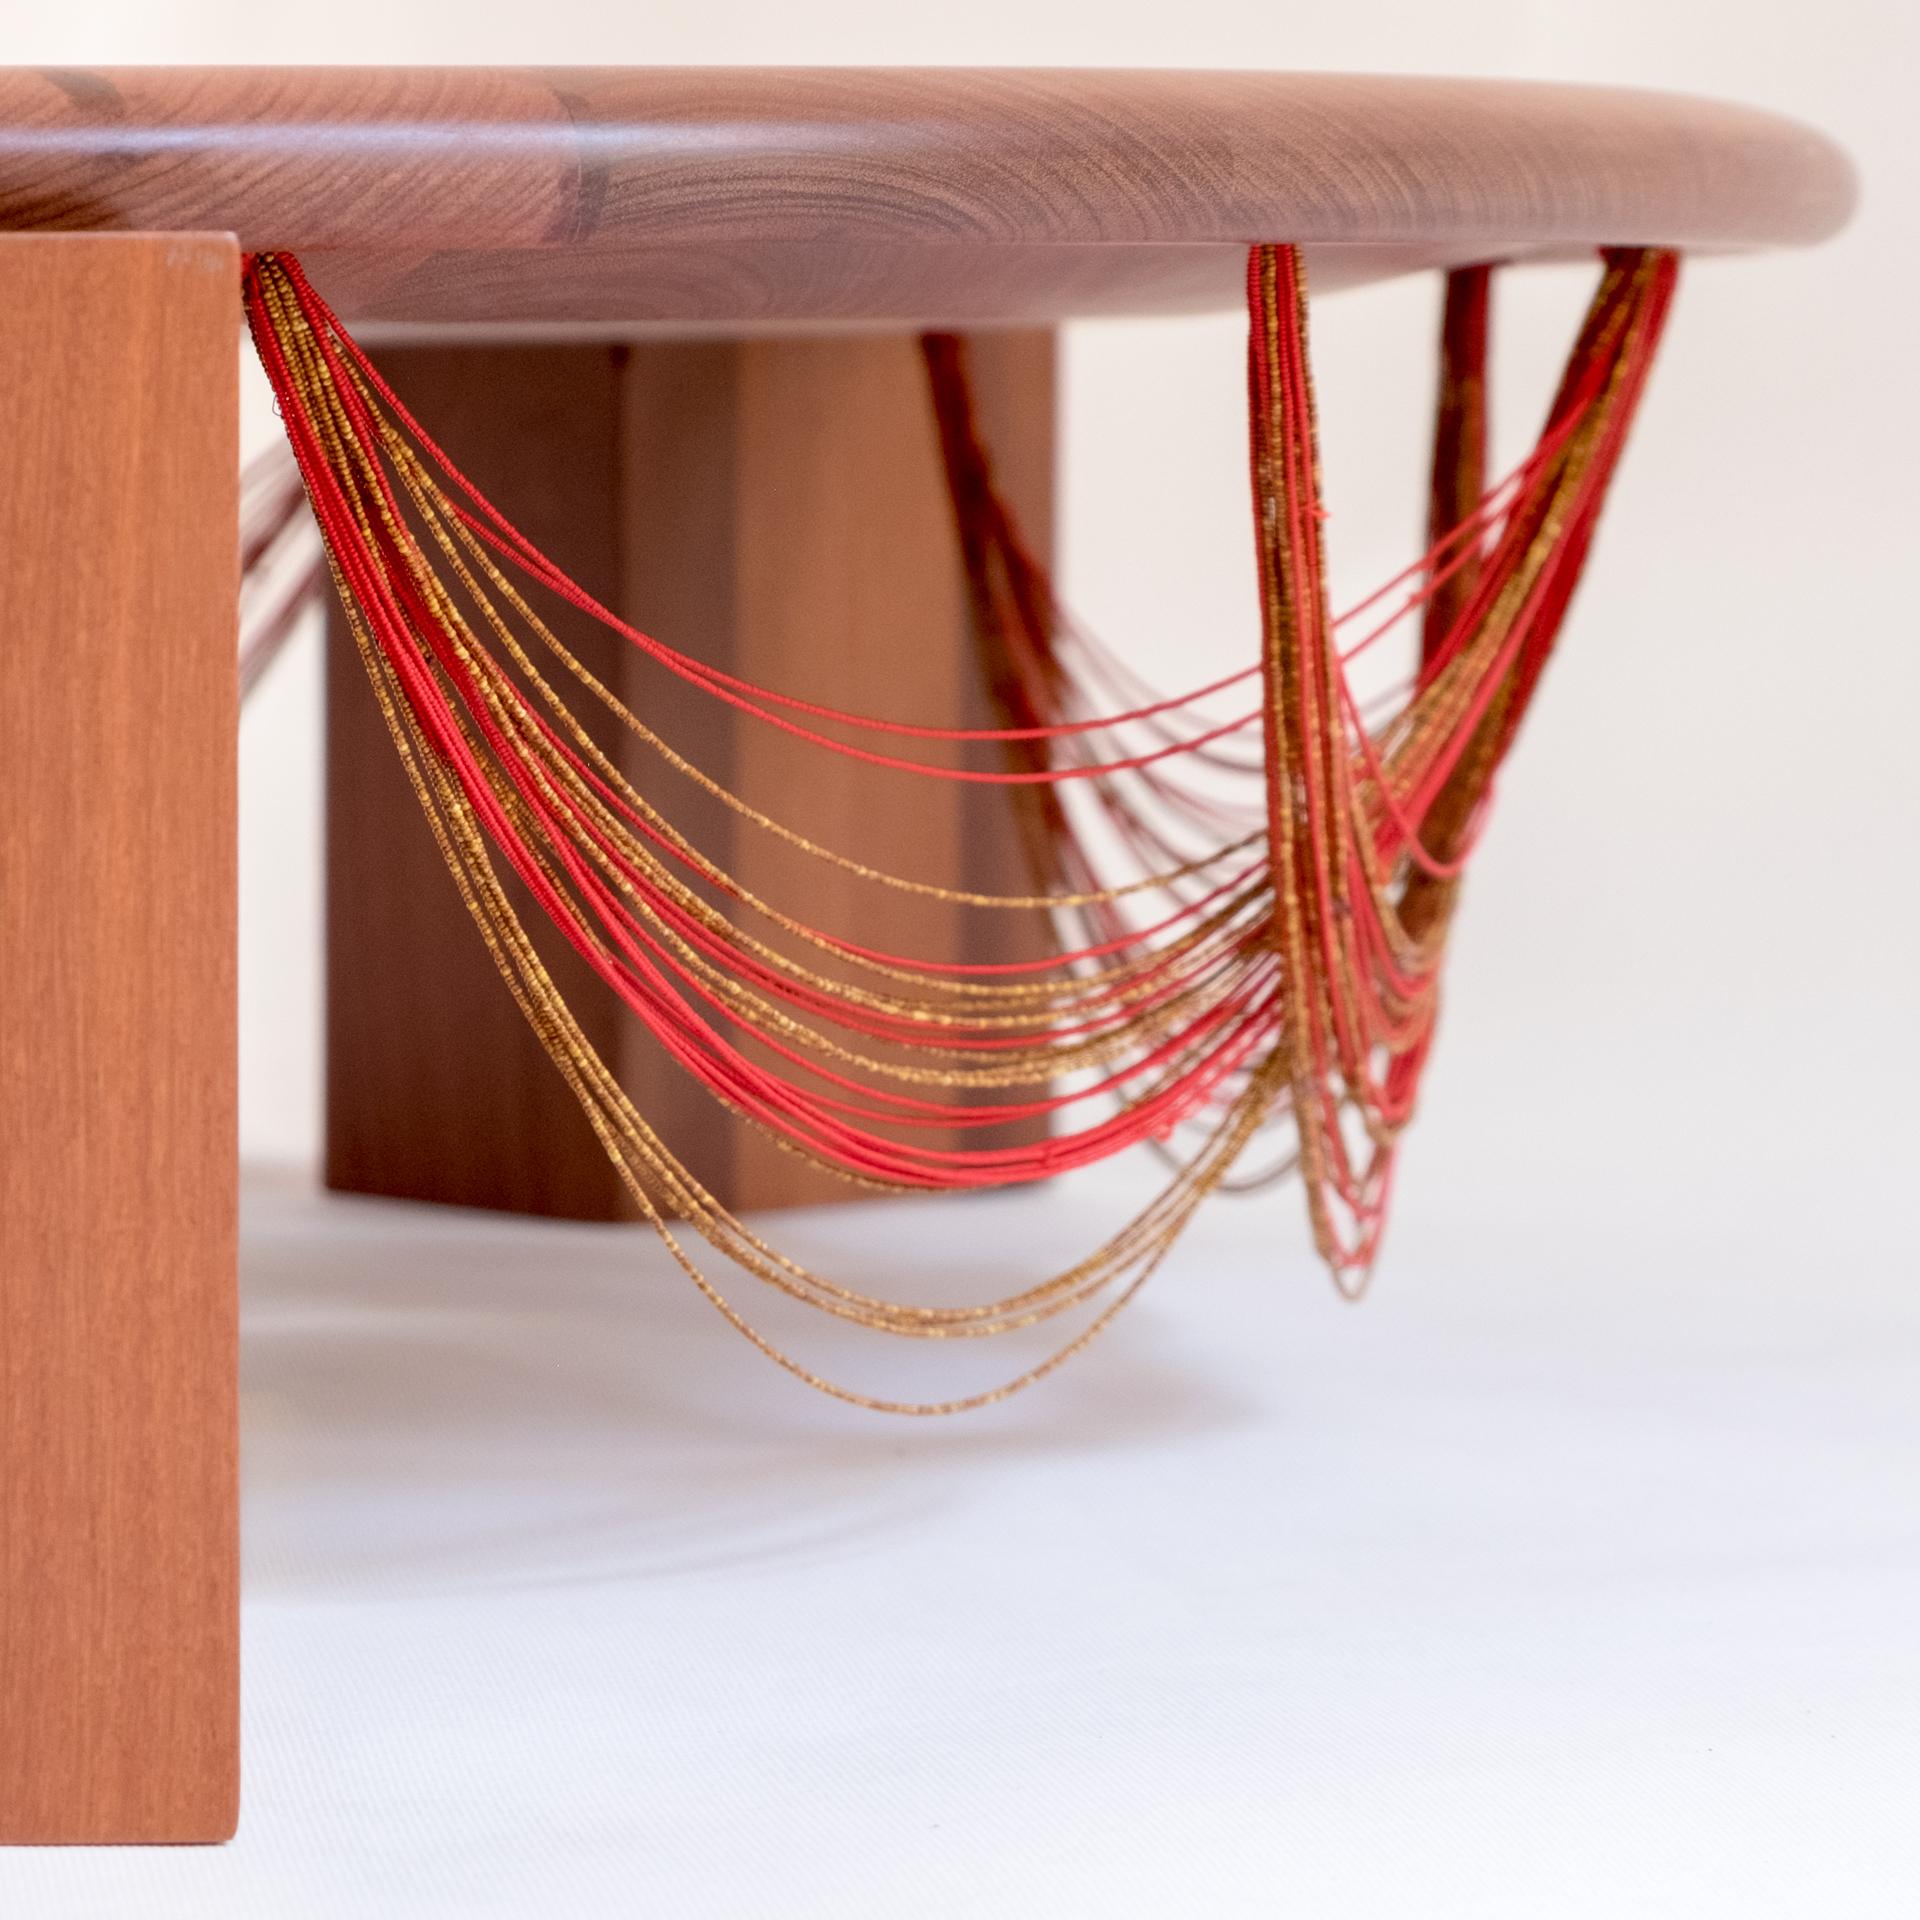 La table centrale Beiju est un hommage aux femmes indigènes Mehinaku. Fabriquée en bois de Cabreúva, elle reçoit de minuscules colliers de perles fabriqués par les autochtones pour être utilisés dans les rituels traditionnels de leur peuple, dans le